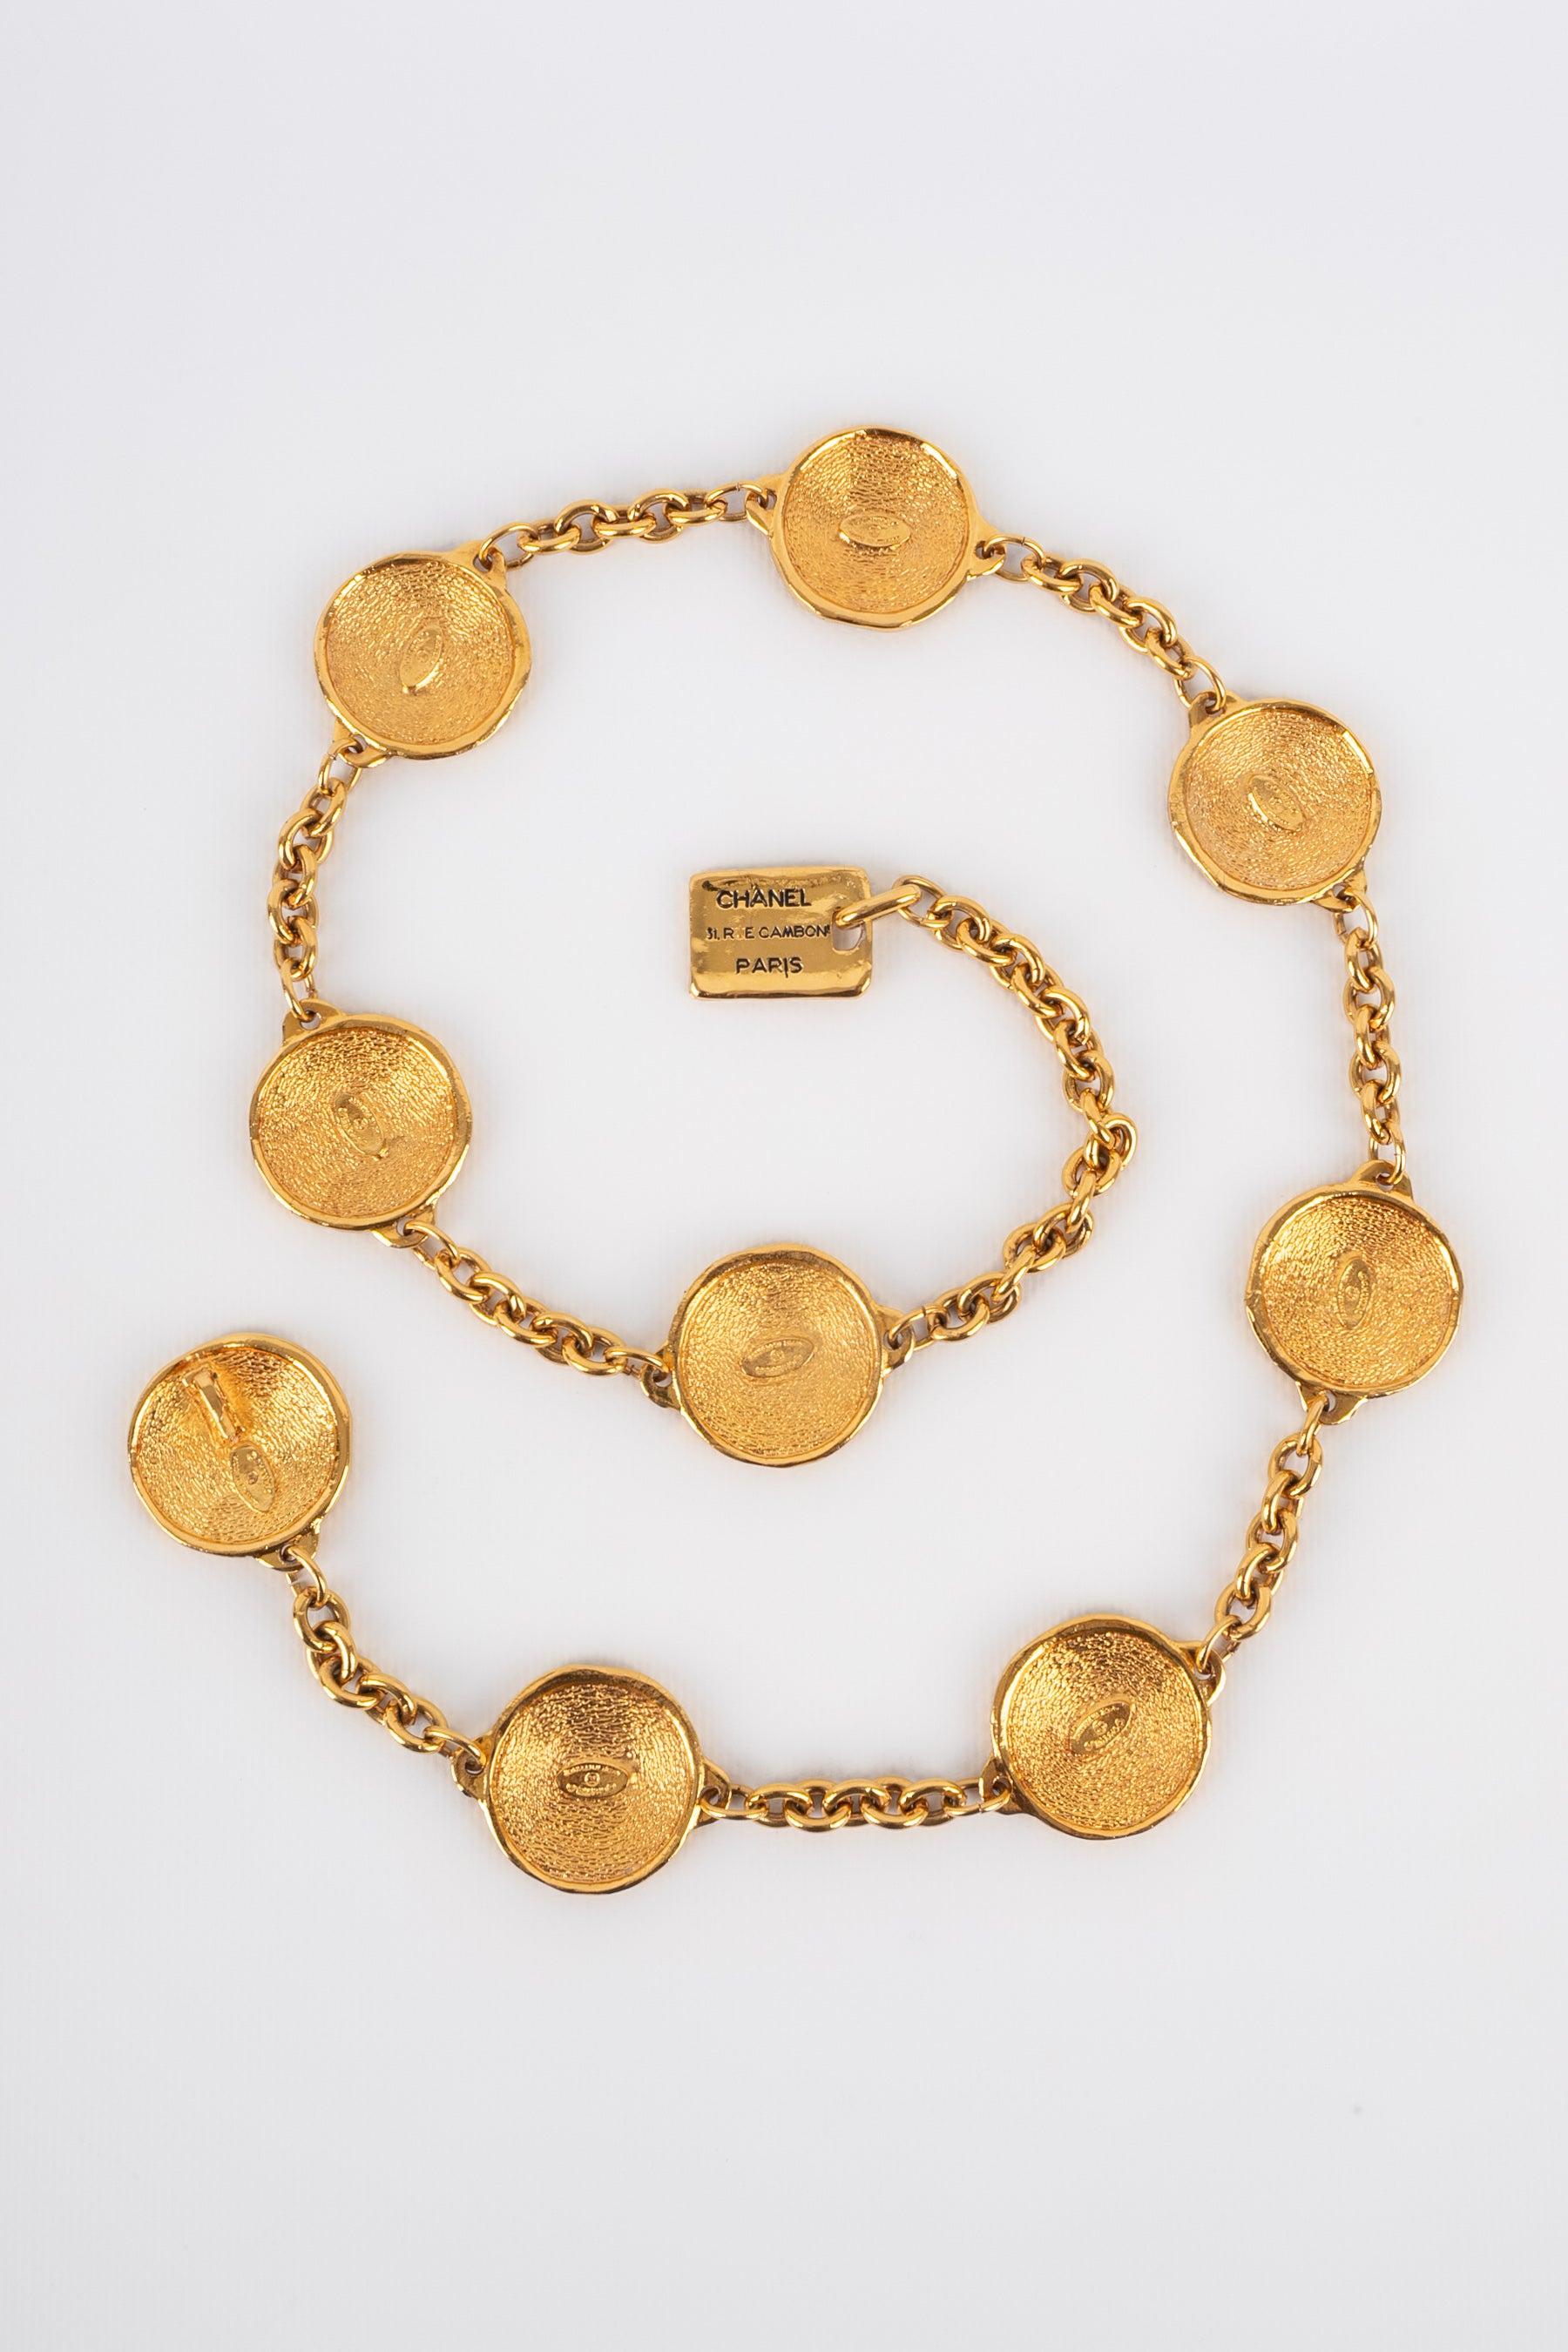 Chanel - (Made in France) Goldener Metallgürtel, bestehend aus Ketten und Medaillons, die Münzen darstellen. Schmuck aus den 1980er Jahren.
 
 Zusätzliche Informationen: 
 Zustand: Sehr guter Zustand
 Abmessungen: Länge: von 73 cm bis 85 cm
